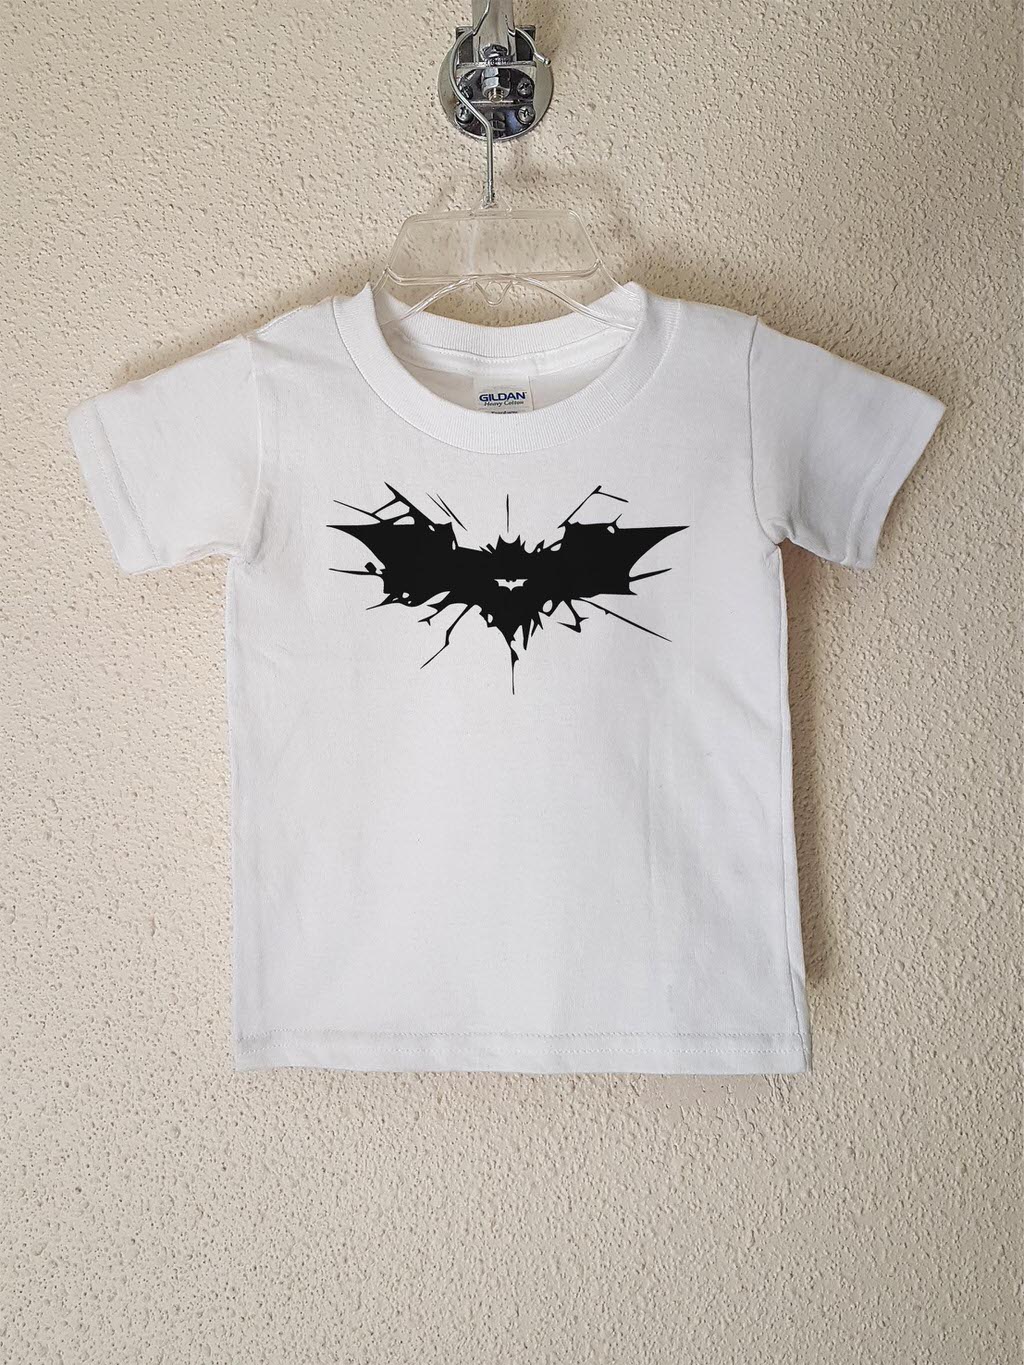 Batman Stencil Negro Polera Blanca Corta Niño Poleradicto - Poleras con Diseño Personalizado